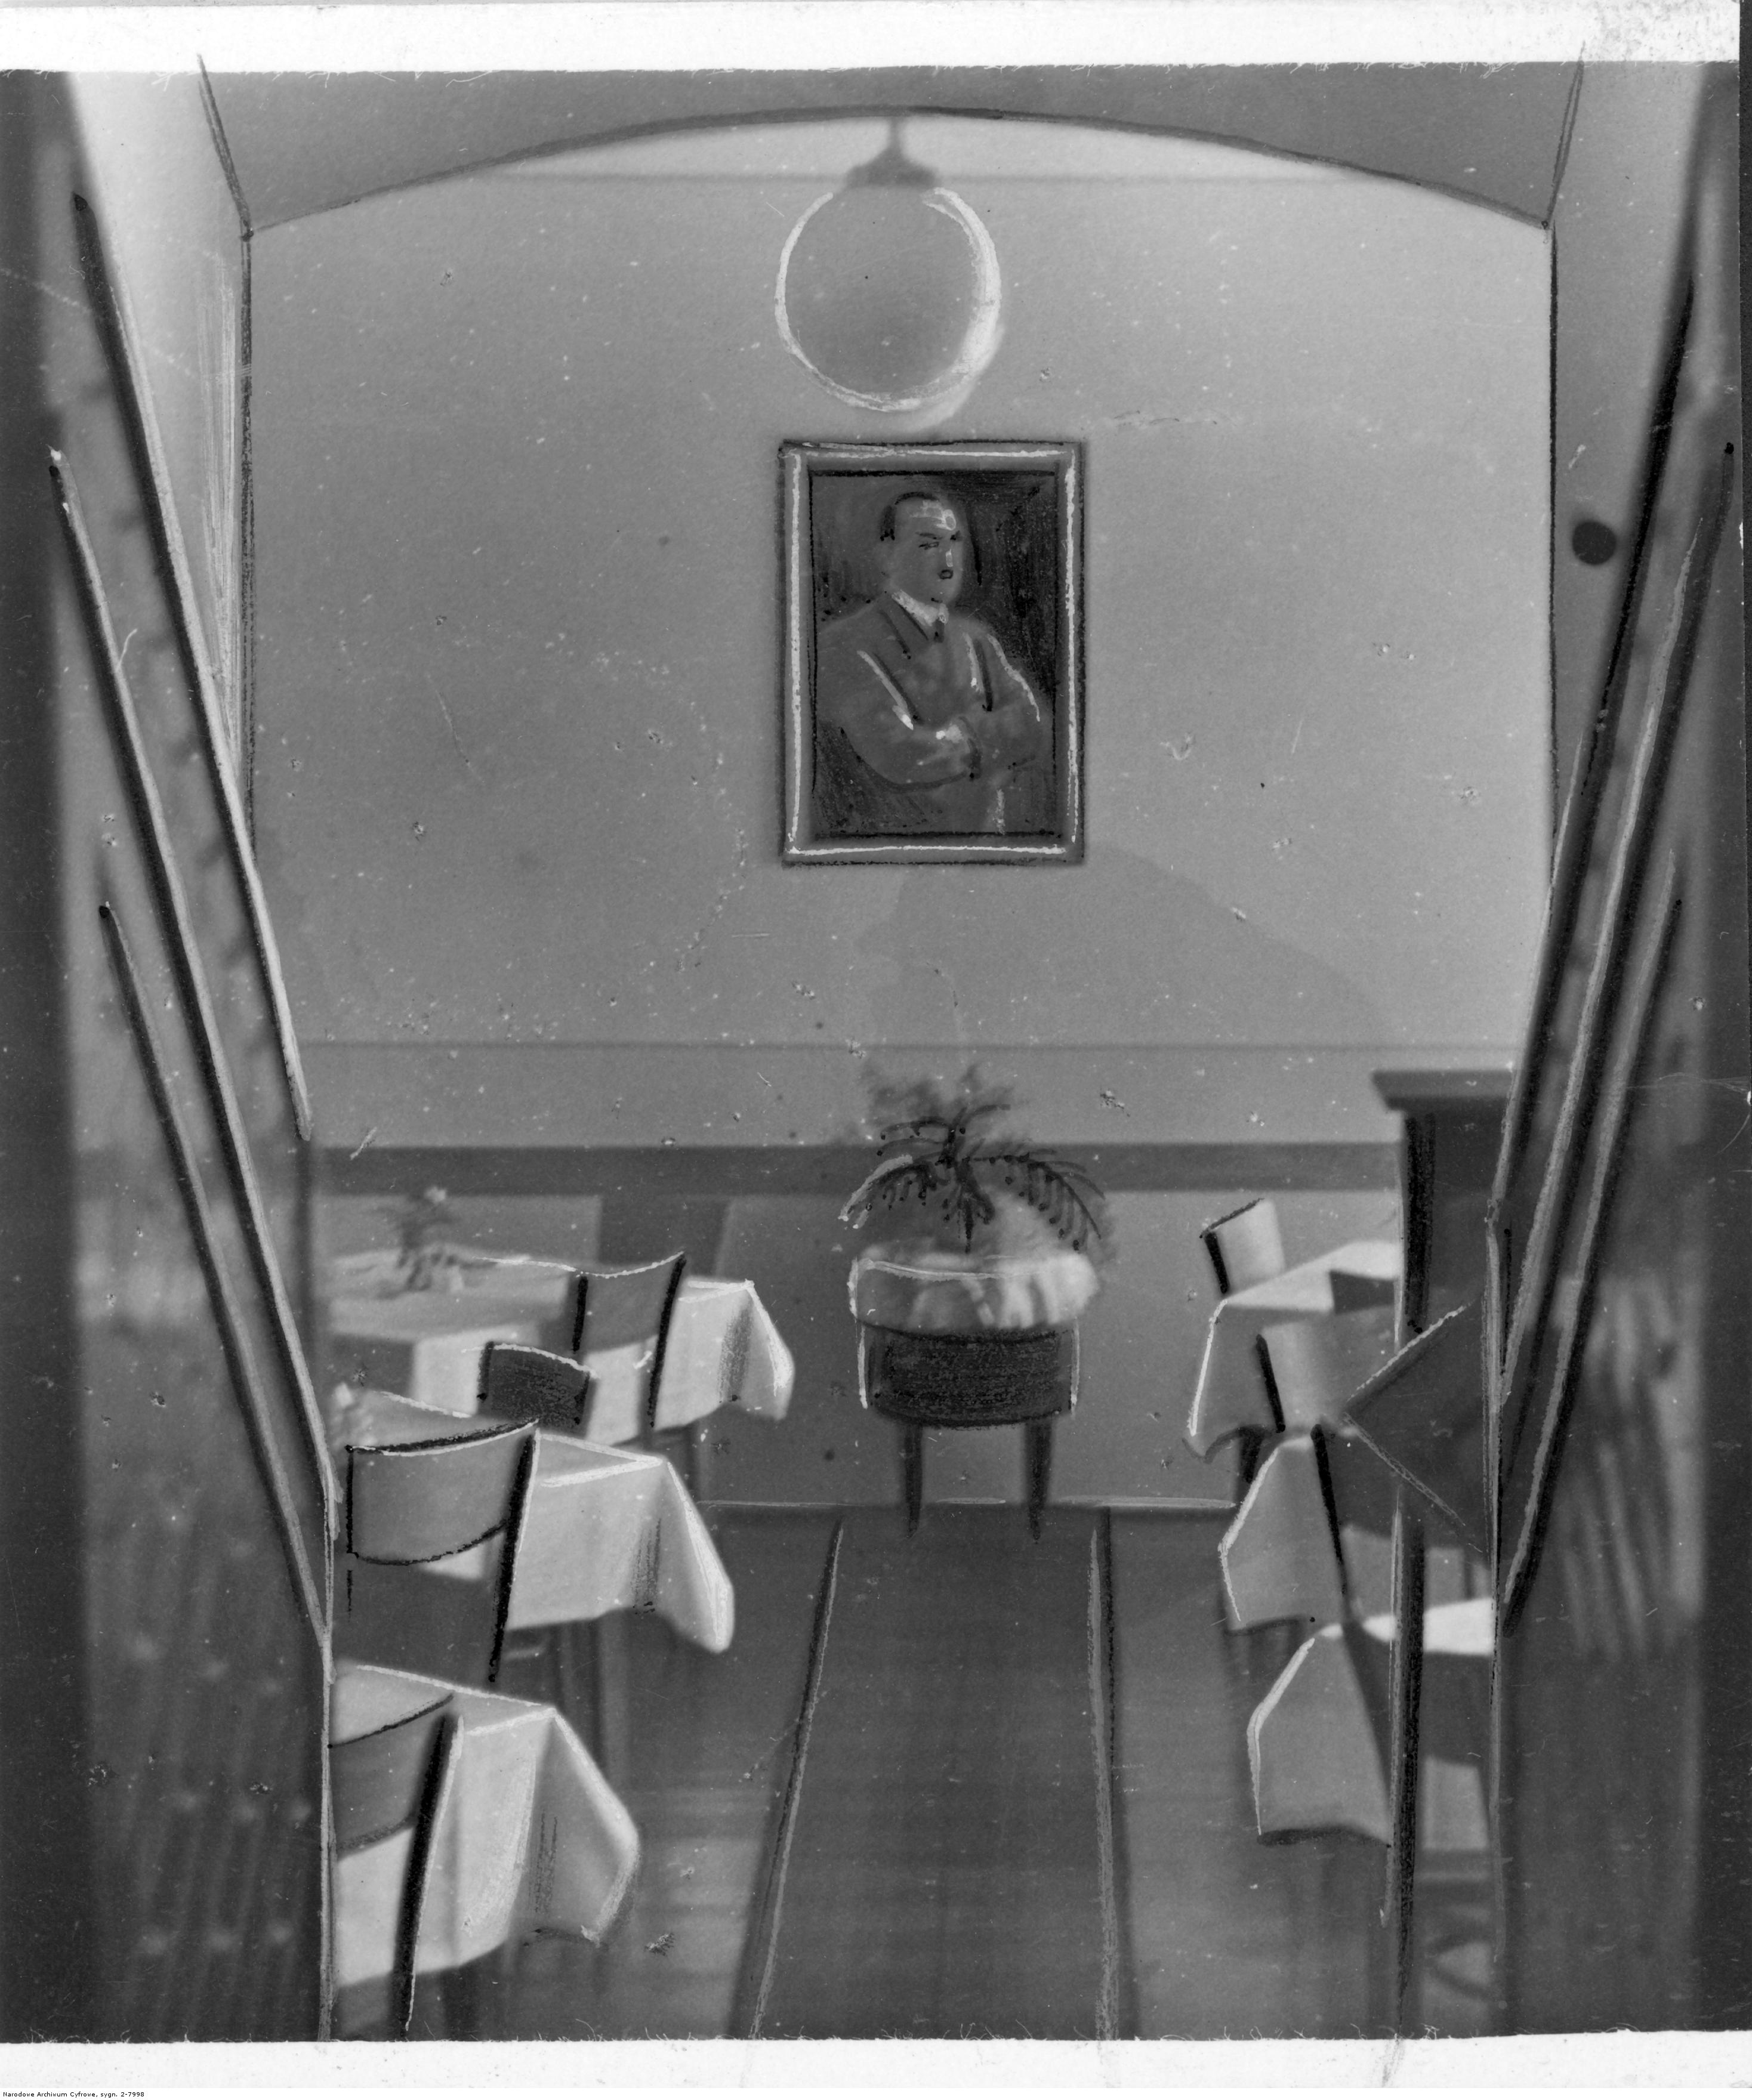 Hotel Reichshof w Rzeszowie - fragment wnętrza. Widoczna sala ze stolikami. Na ścianie portret Adolfa Hitlera, rok 1940-12